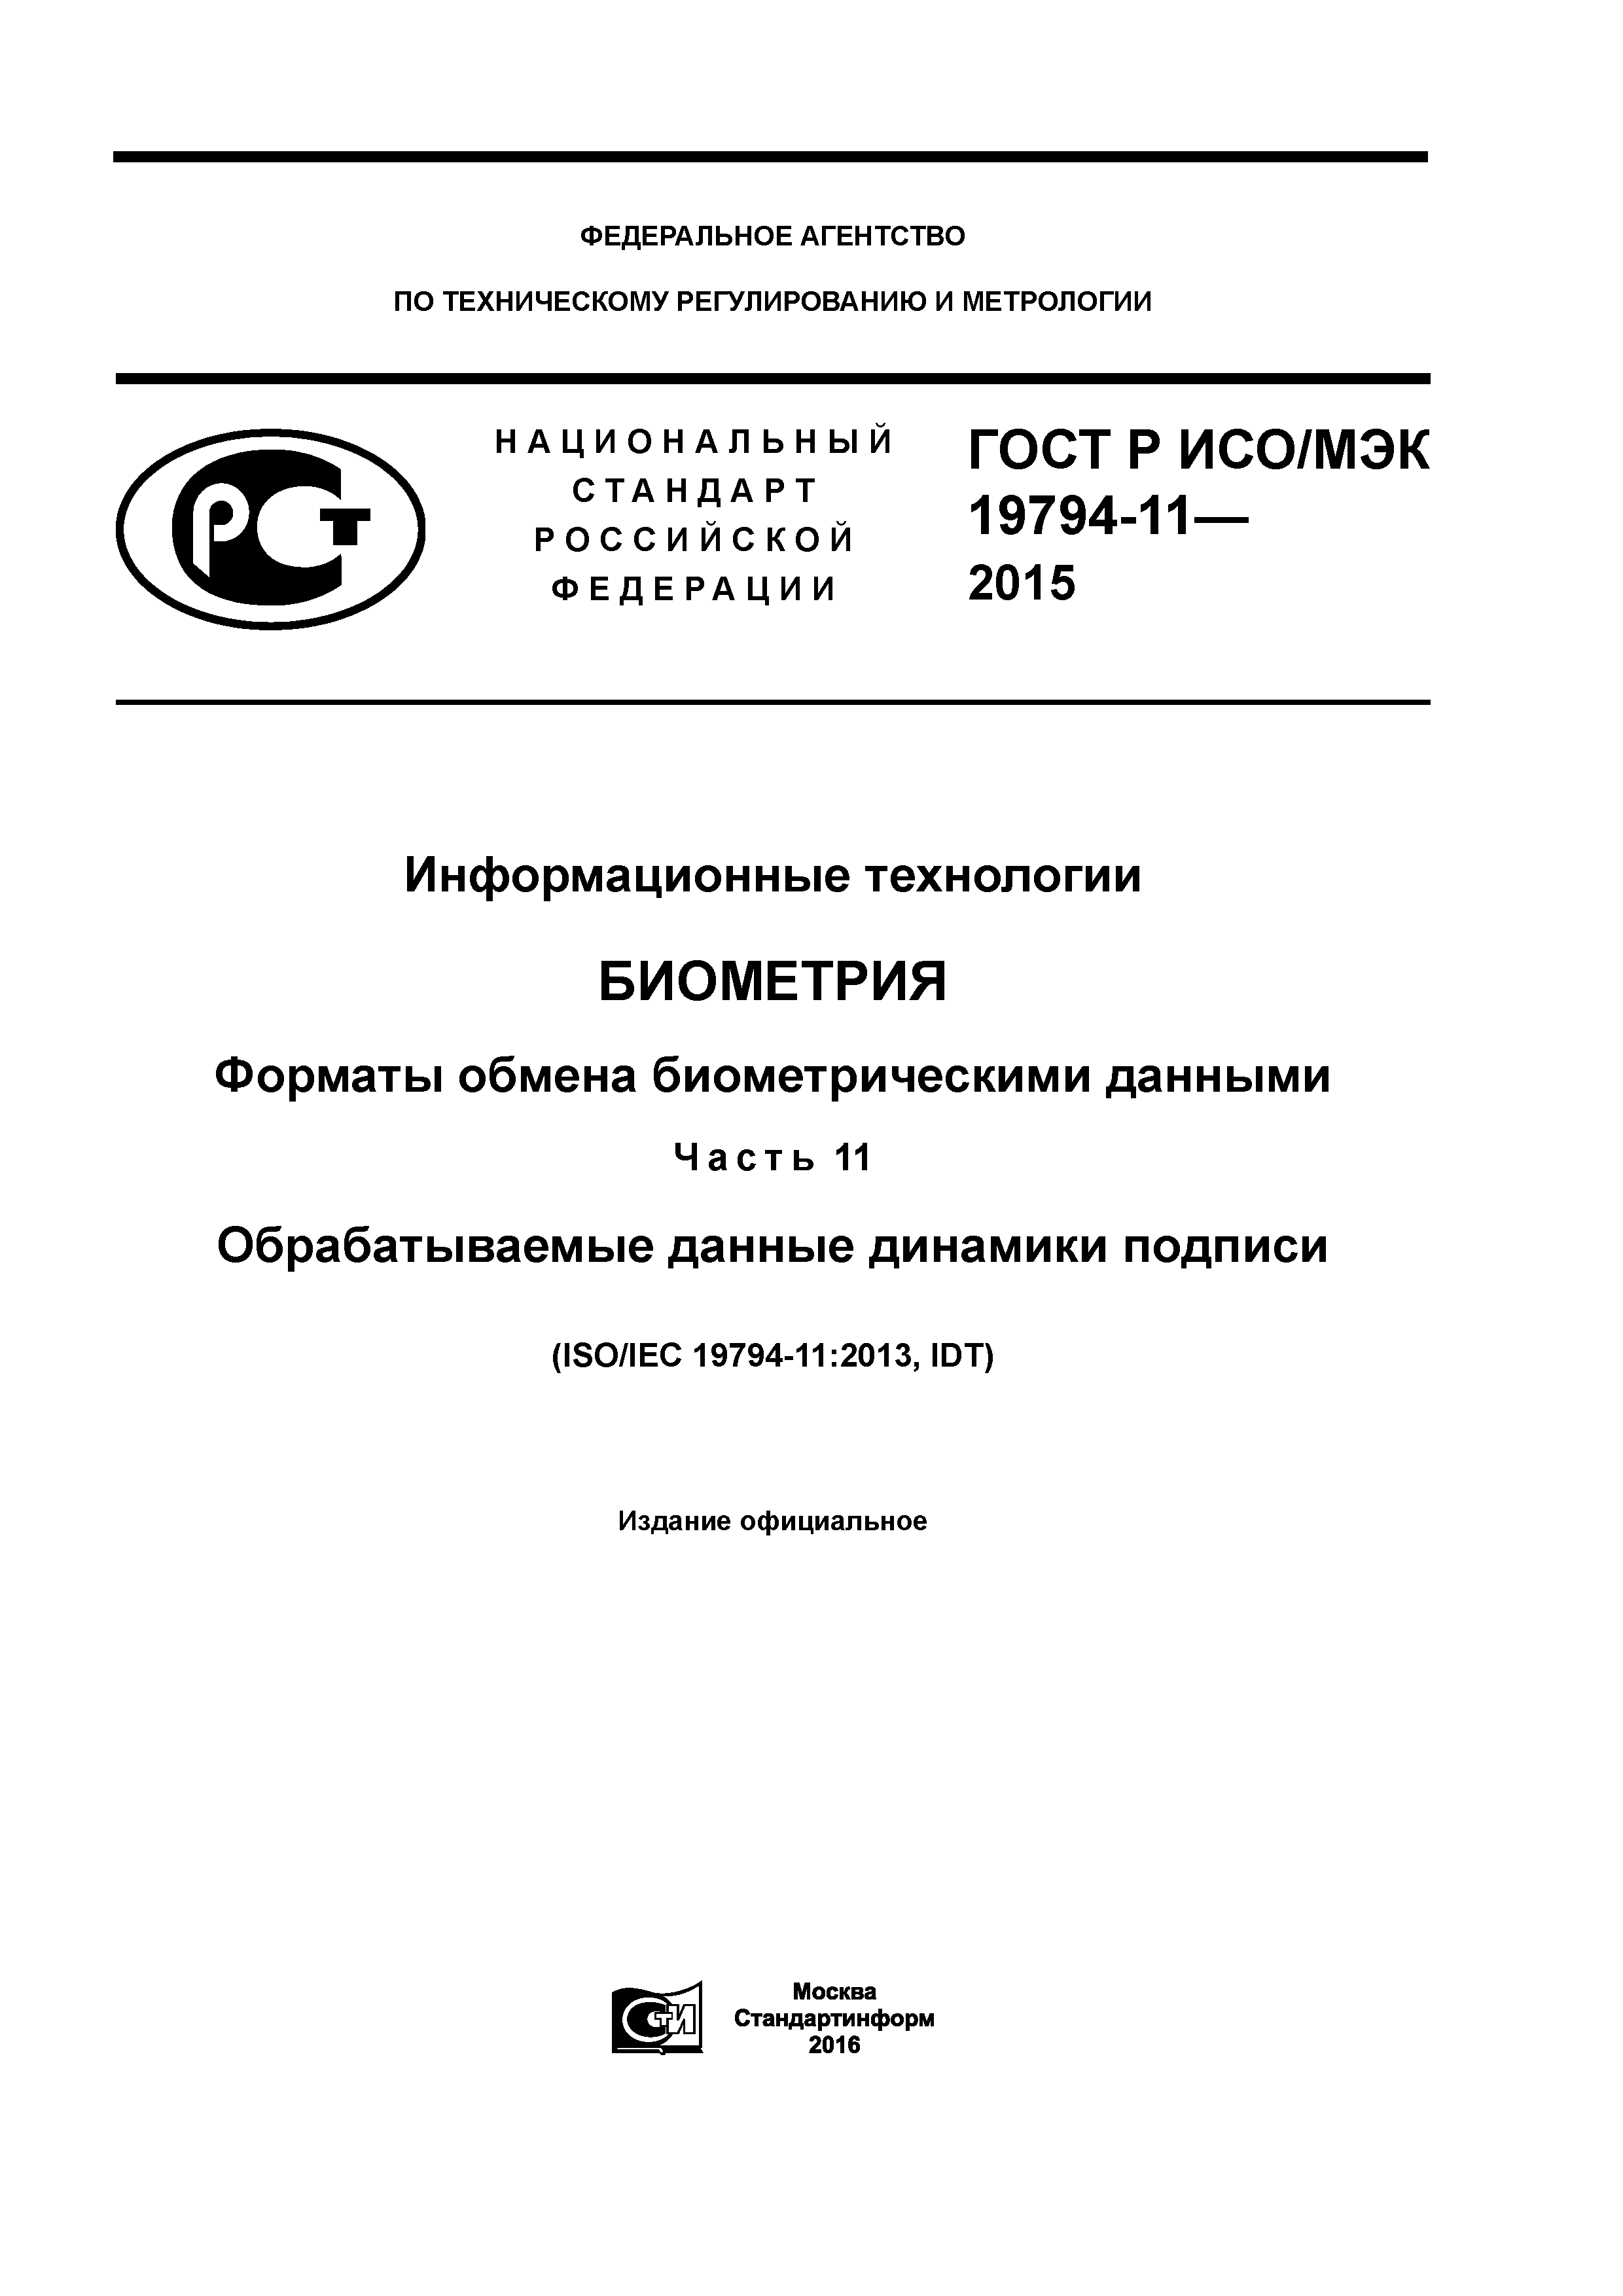 ГОСТ Р ИСО/МЭК 19794-11-2015